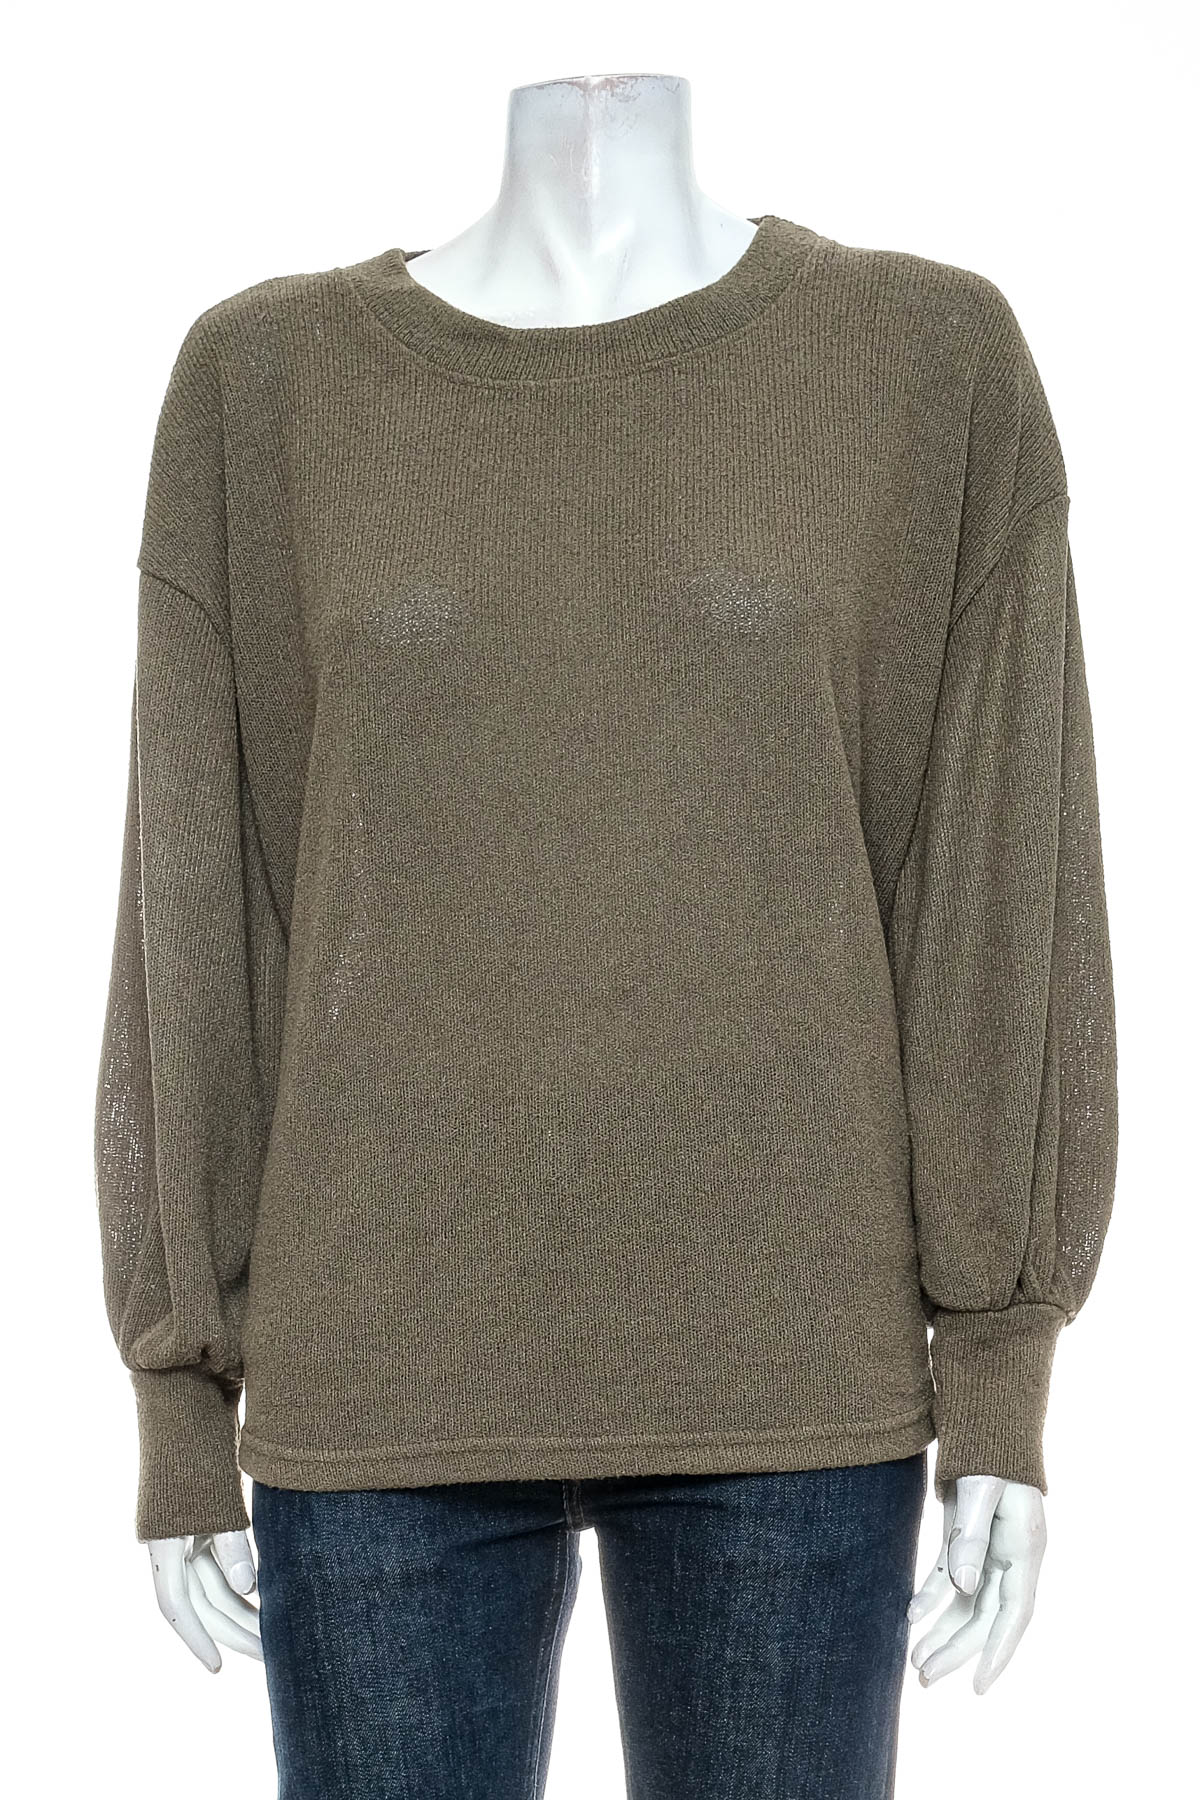 Women's sweater - Avella - 0